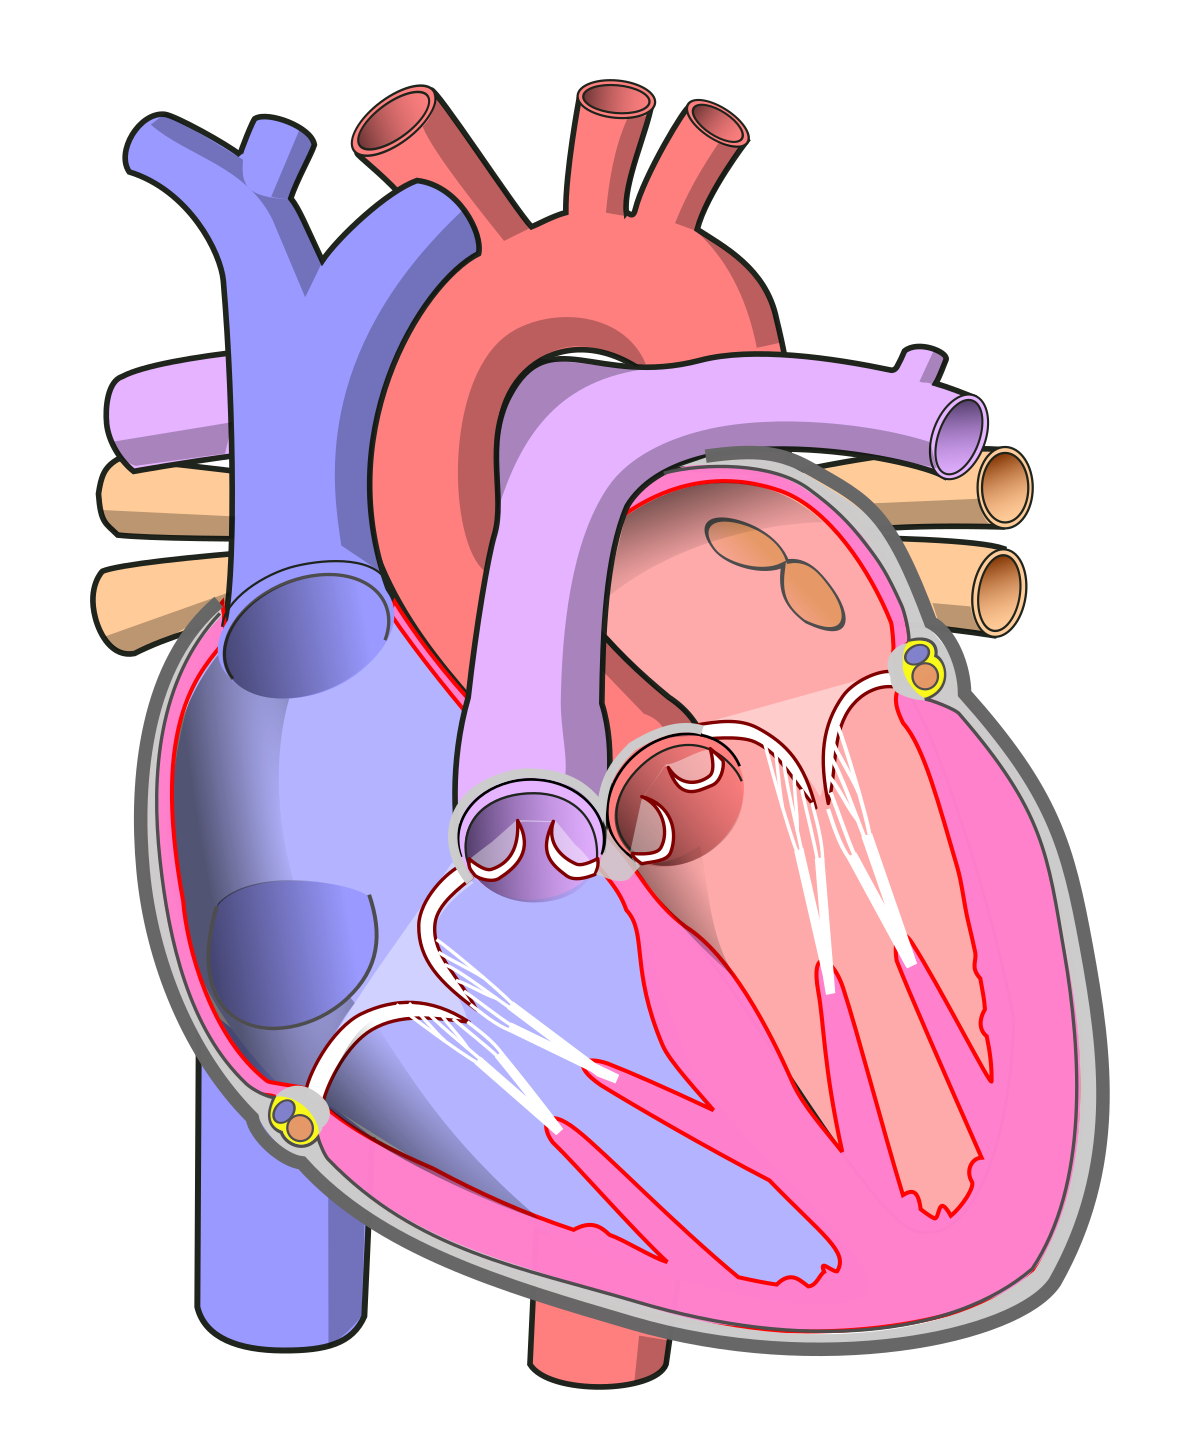 Human Heart Transparent Image